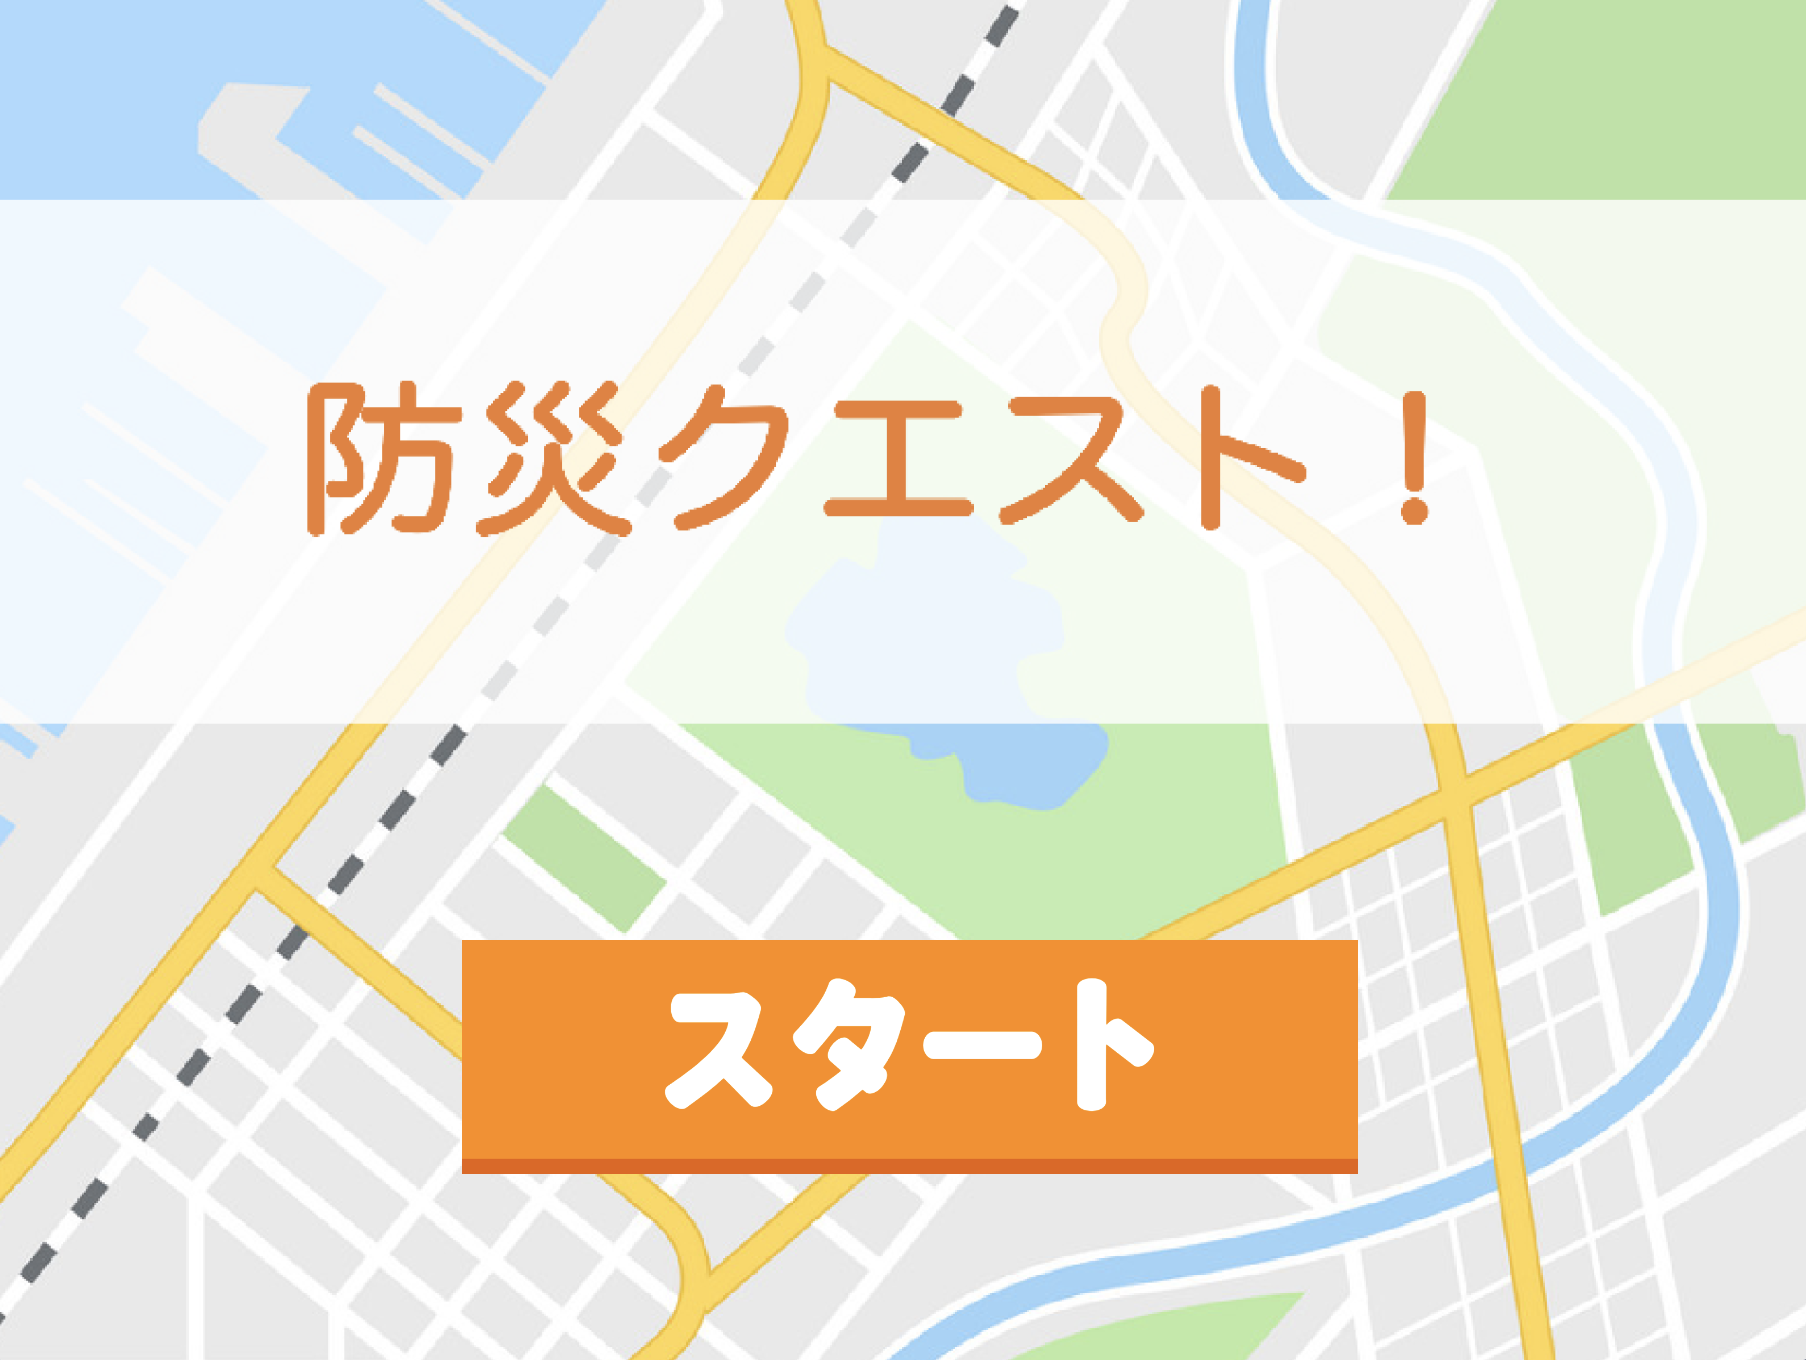 千葉市の"すごい"企業を楽しく知る！クイズゲーム「防災クエスト」の紹介